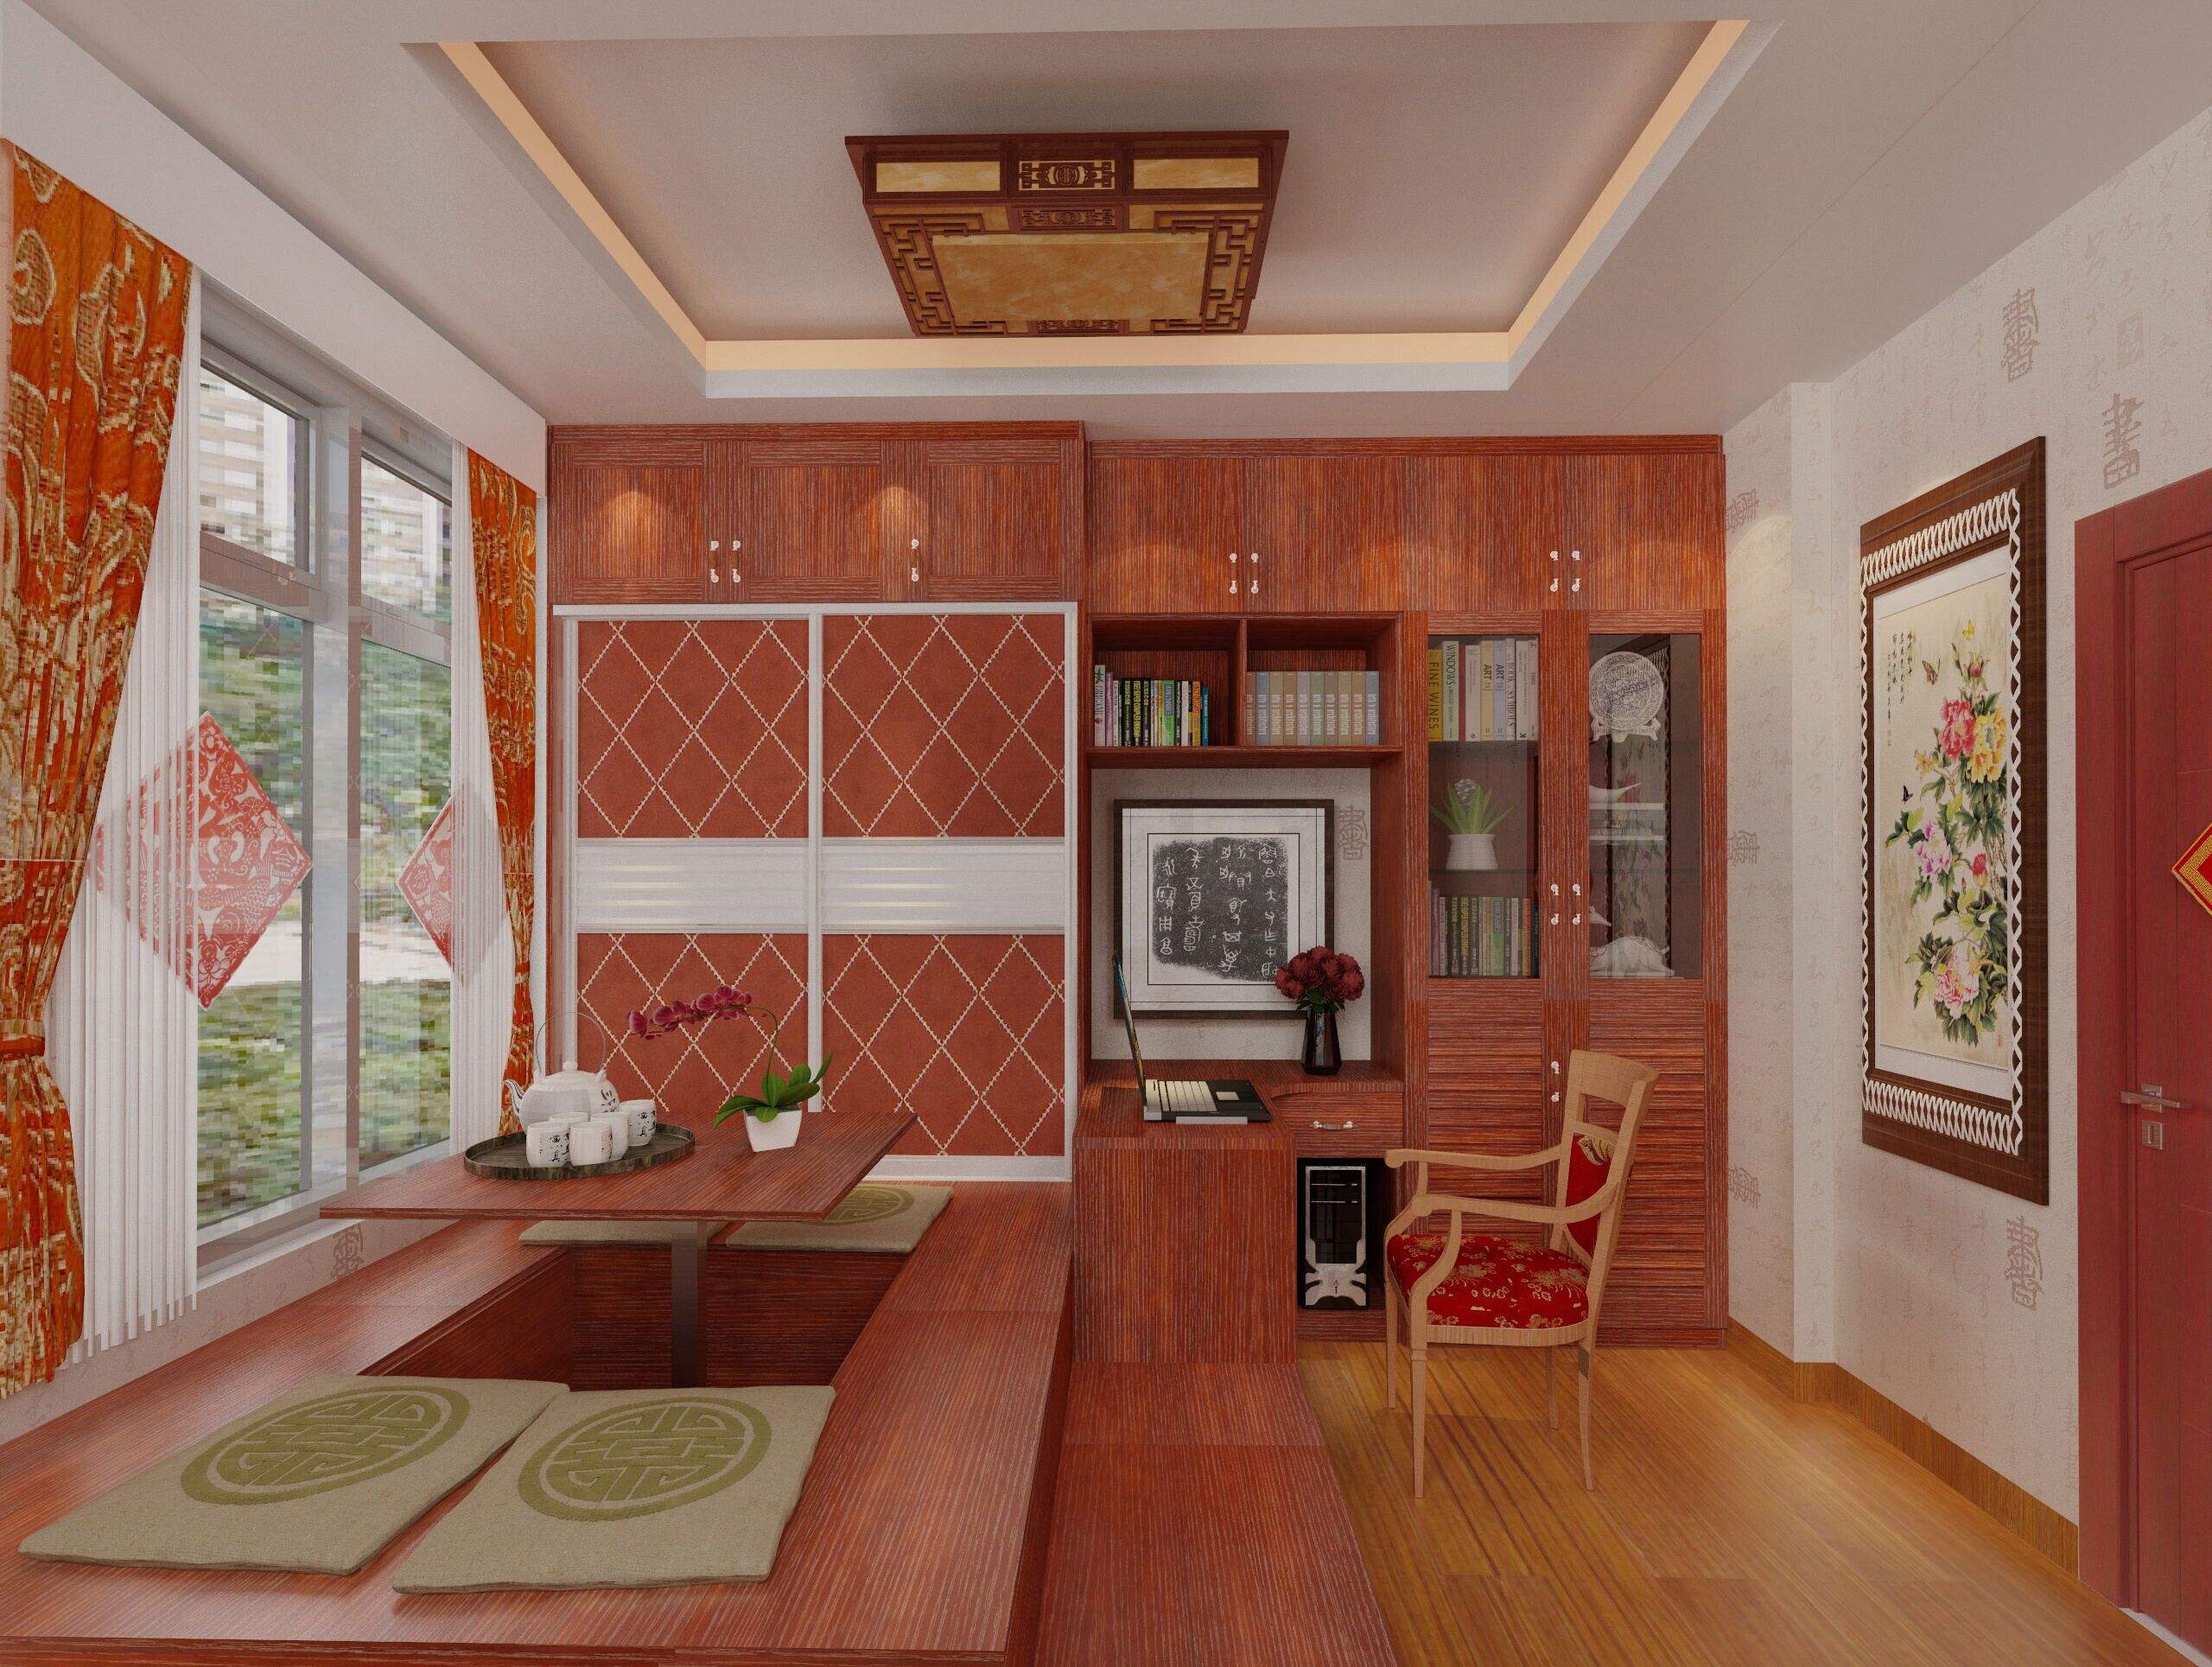 3层别墅古典整体榻榻米卧室装修效果图